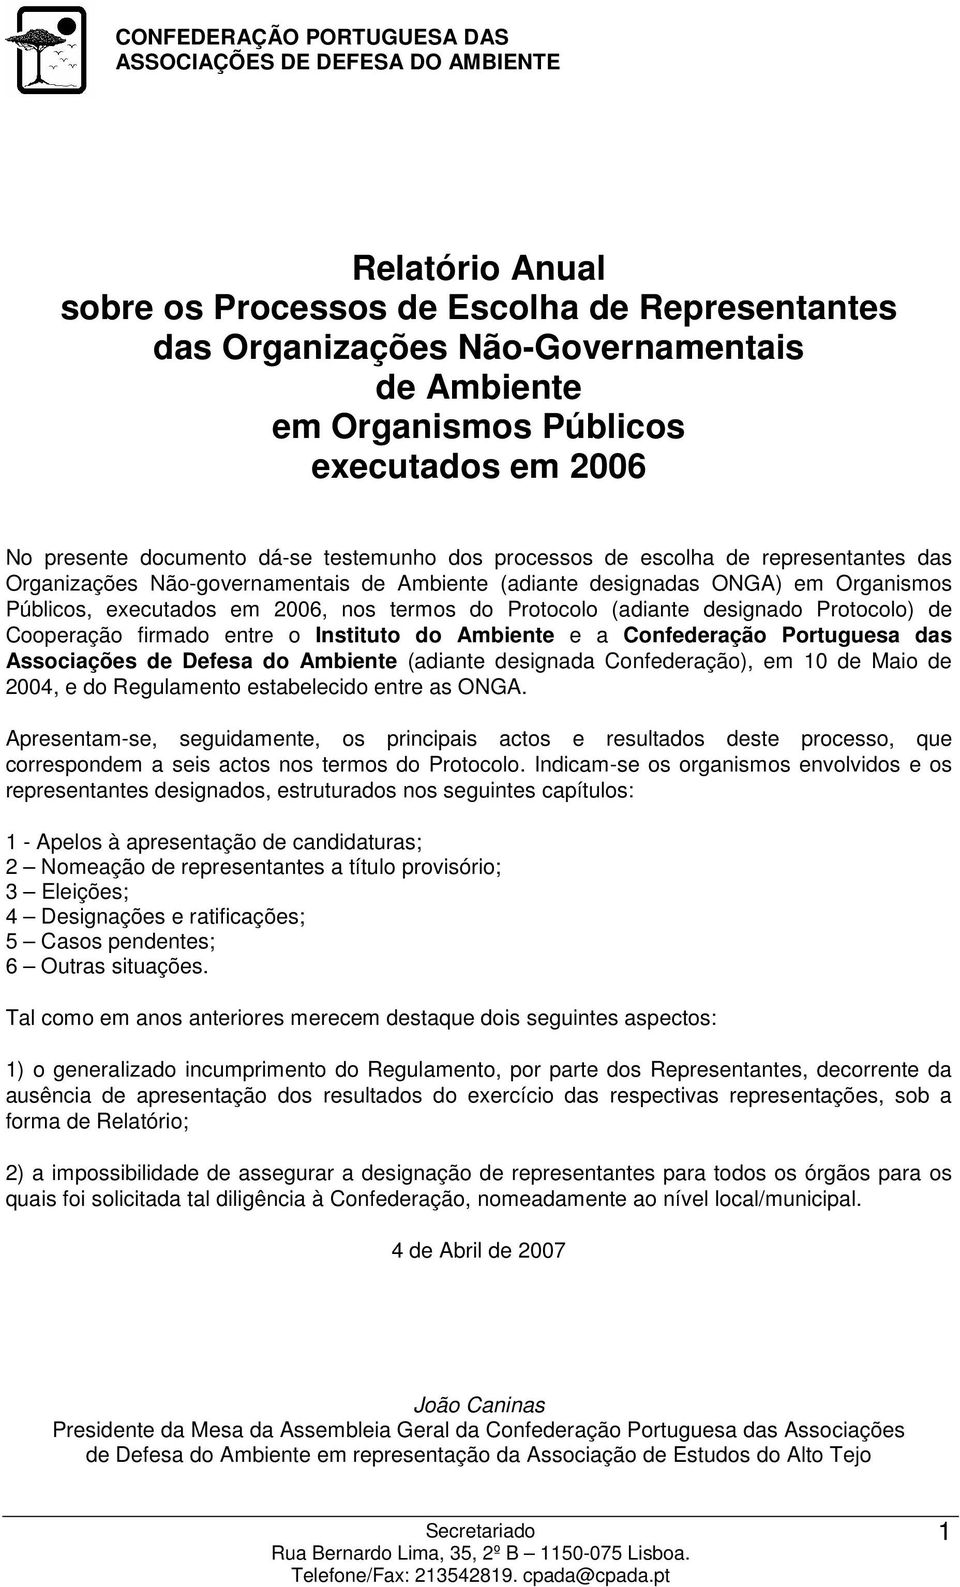 executados em 2006, nos termos do Protocolo (adiante designado Protocolo) de Cooperação firmado entre o Instituto do Ambiente e a Confederação Portuguesa das Associações de Defesa do Ambiente